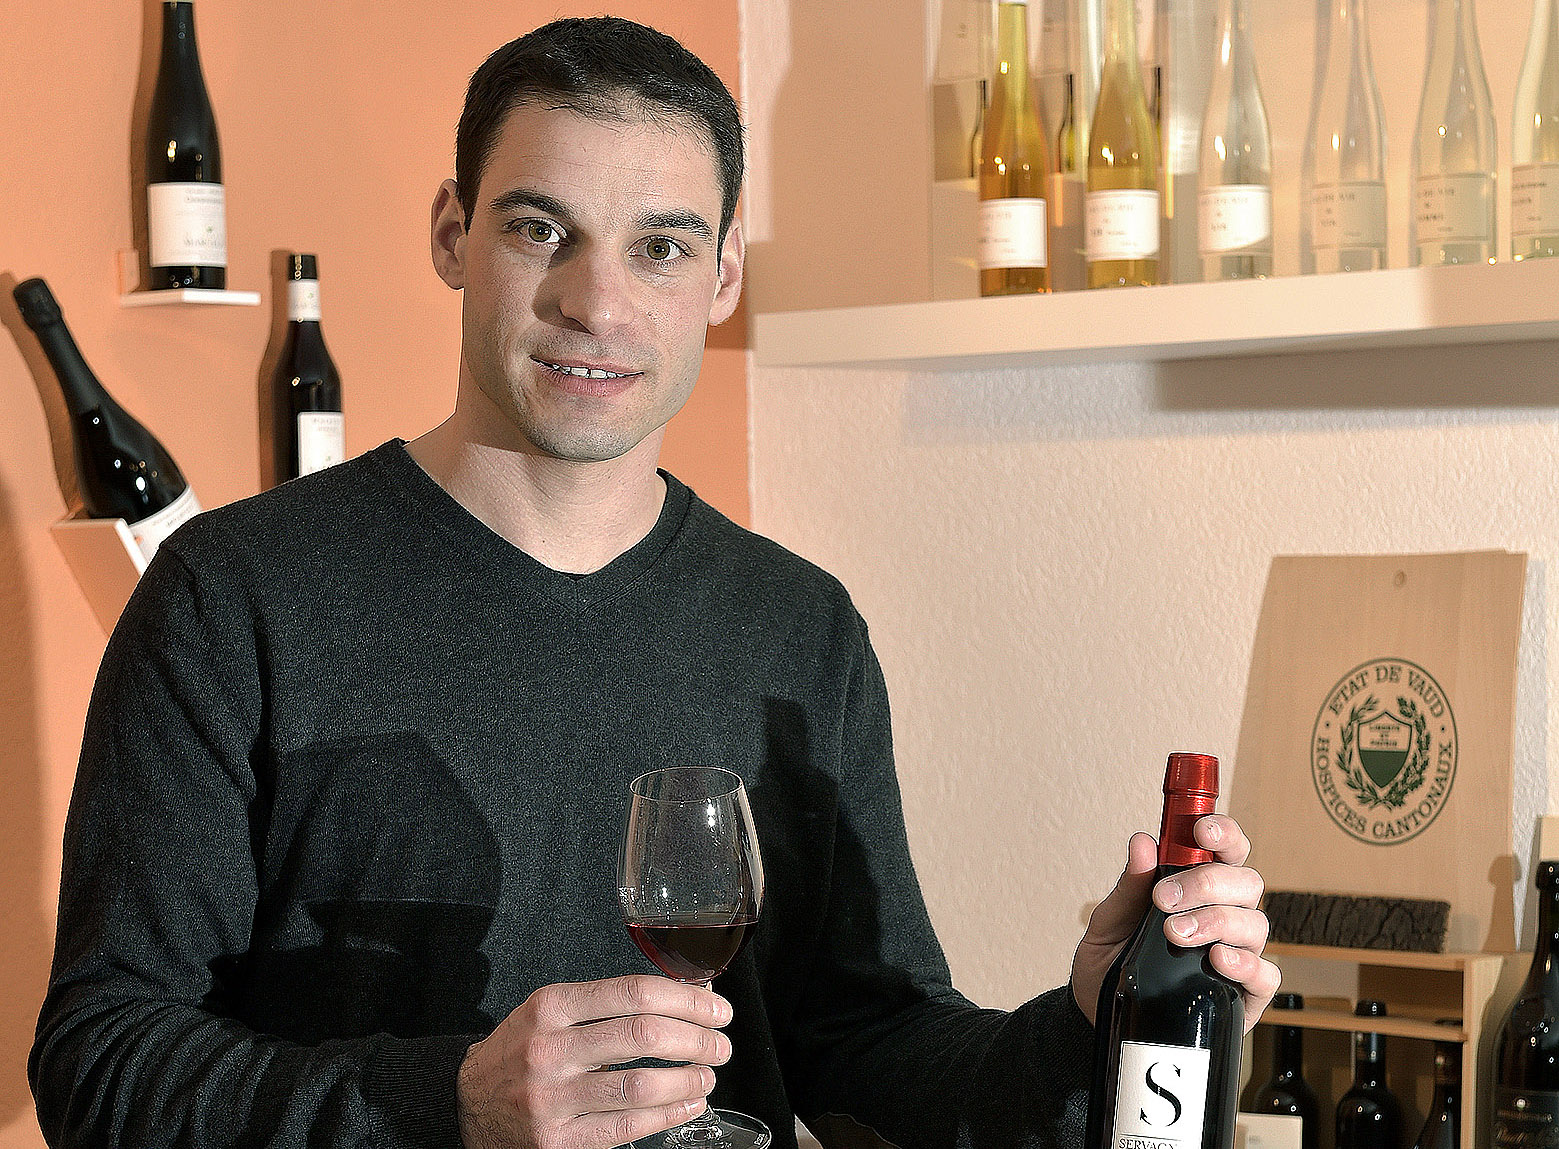 Le millésime 2015 promet des vins au fort potentiel